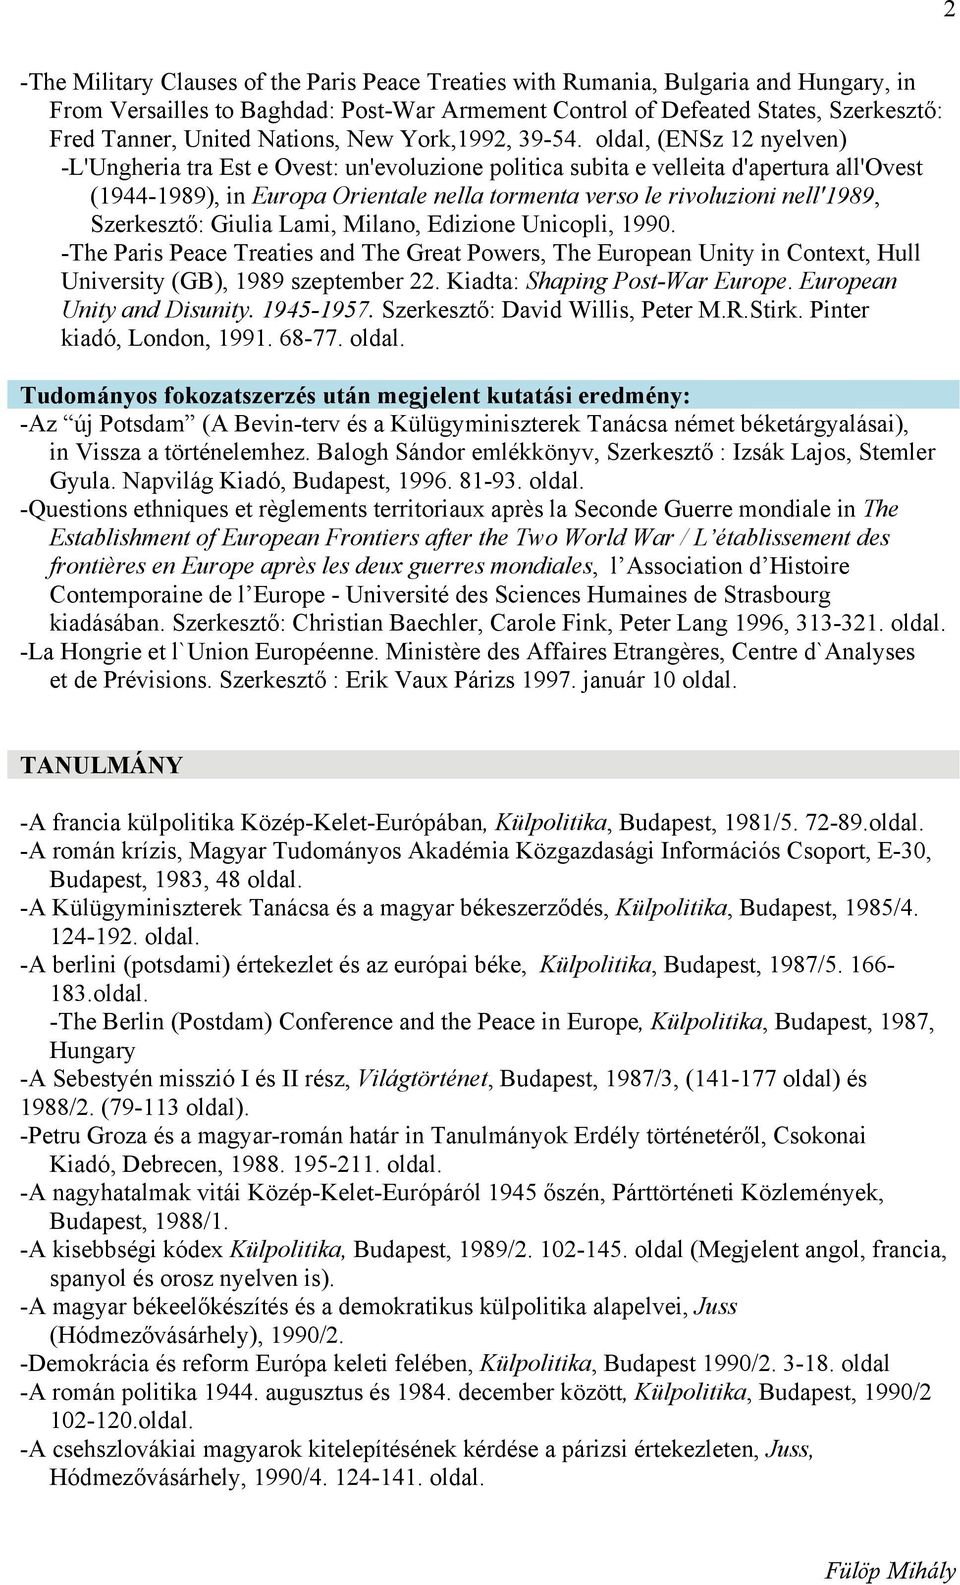 oldal, (ENSz 12 nyelven) -L'Ungheria tra Est e Ovest: un'evoluzione politica subita e velleita d'apertura all'ovest (1944-1989), in Europa Orientale nella tormenta verso le rivoluzioni nell'1989,